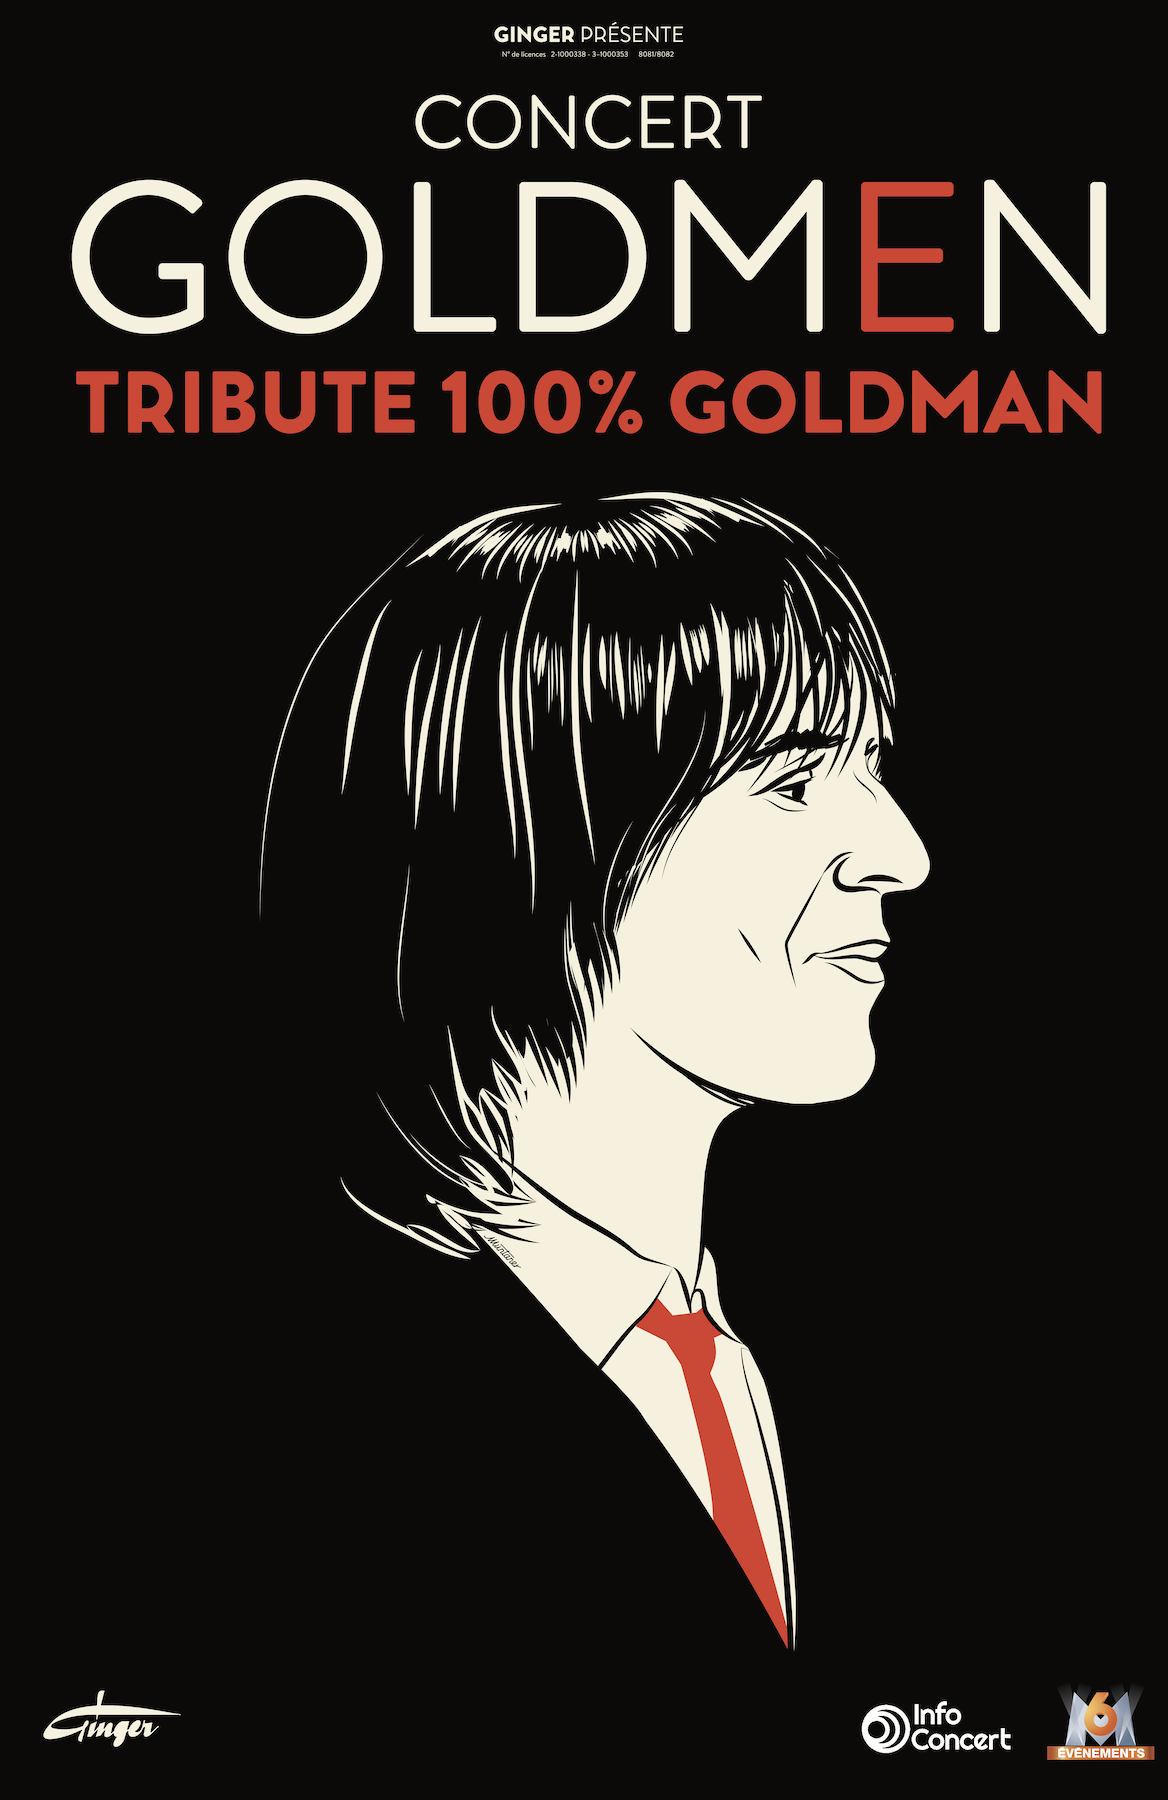 Goldmen Tribute 100 Goldman at Espace Pierre Bachelet - Cartonnerie Tickets